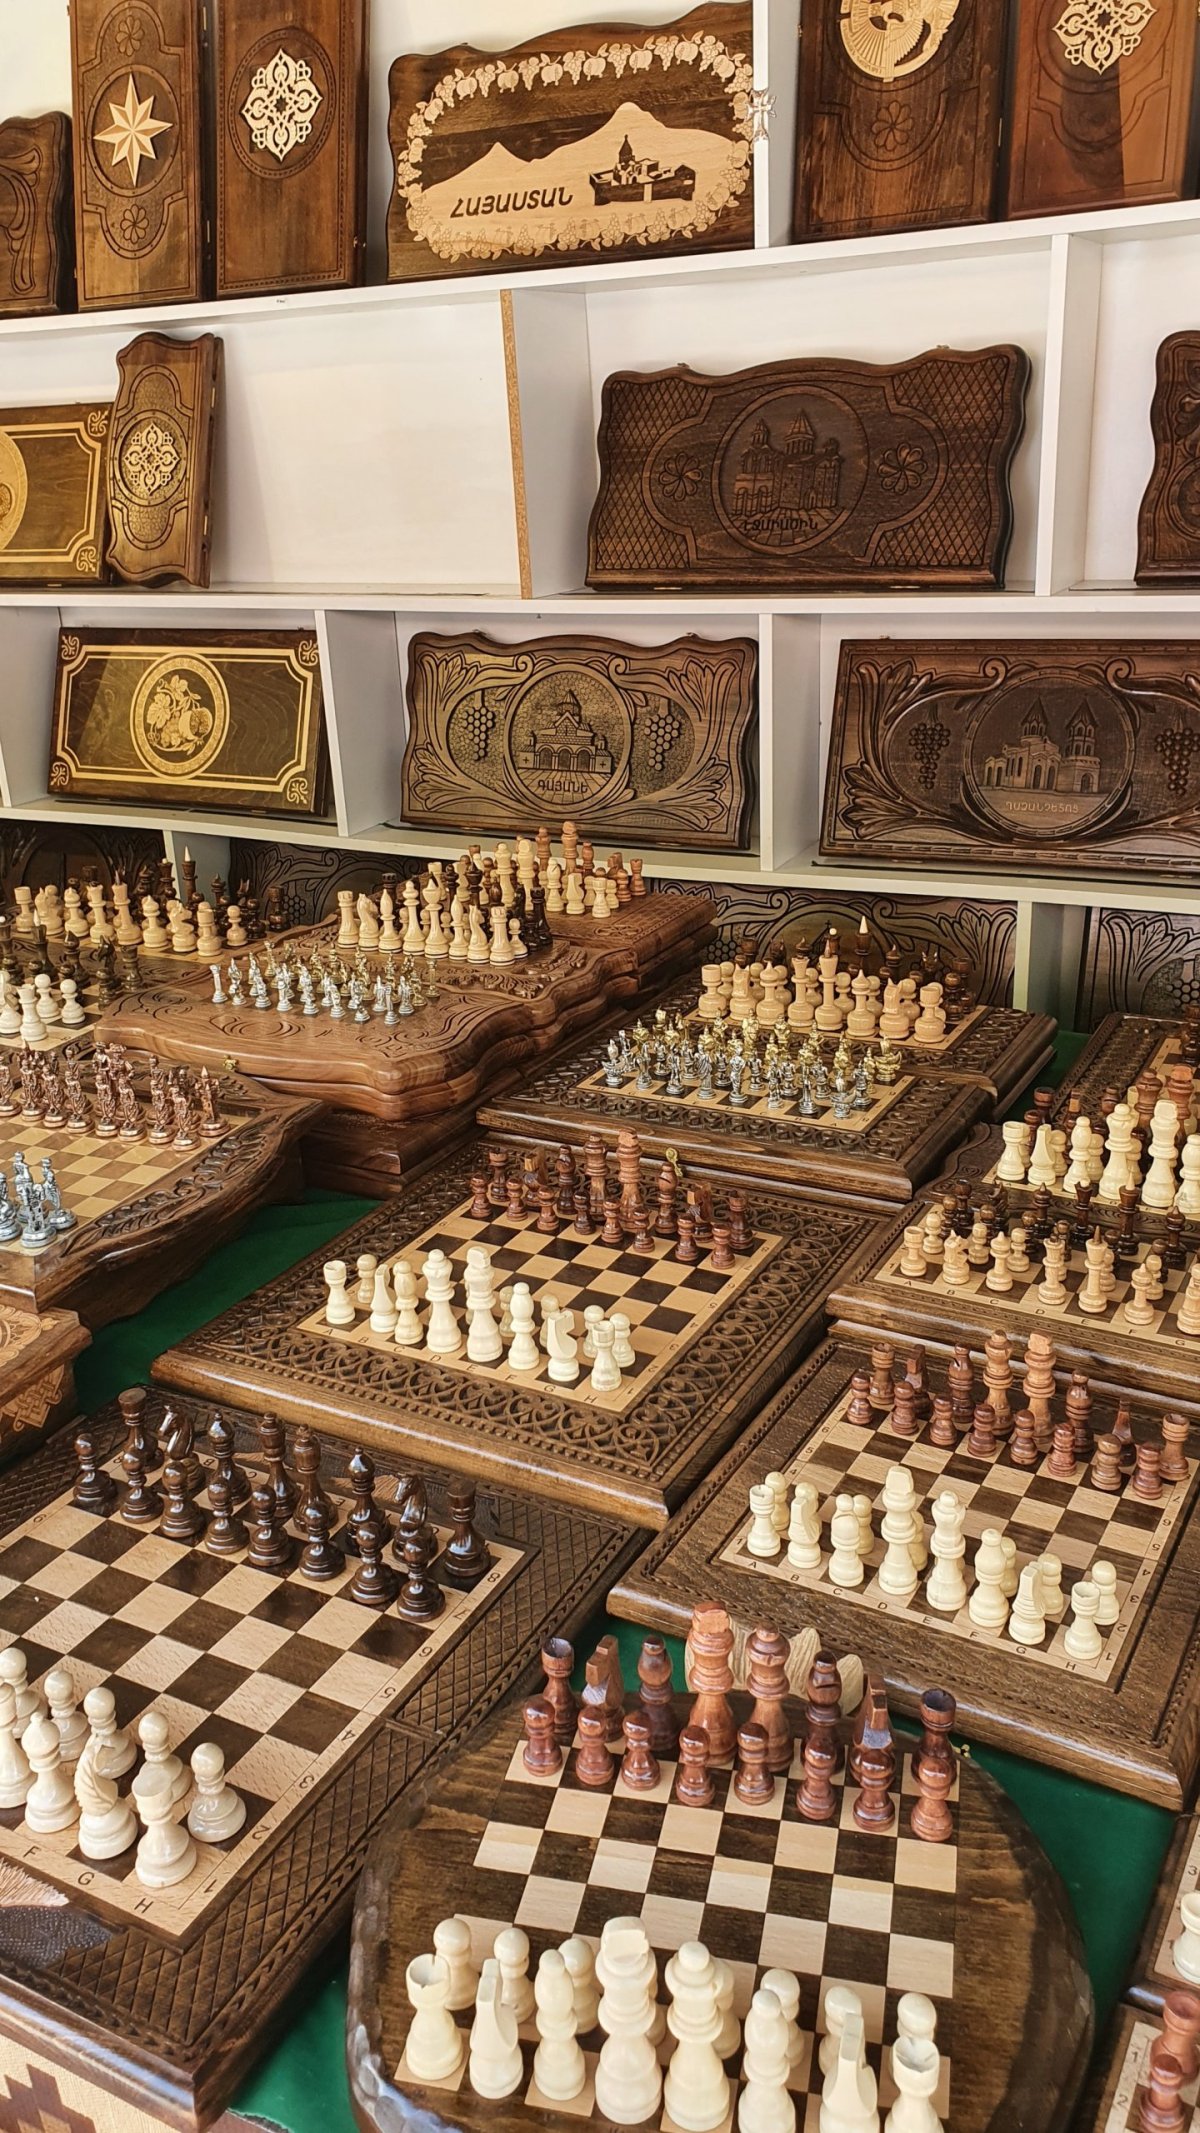 Ručně vyřezávané šachy i krabice